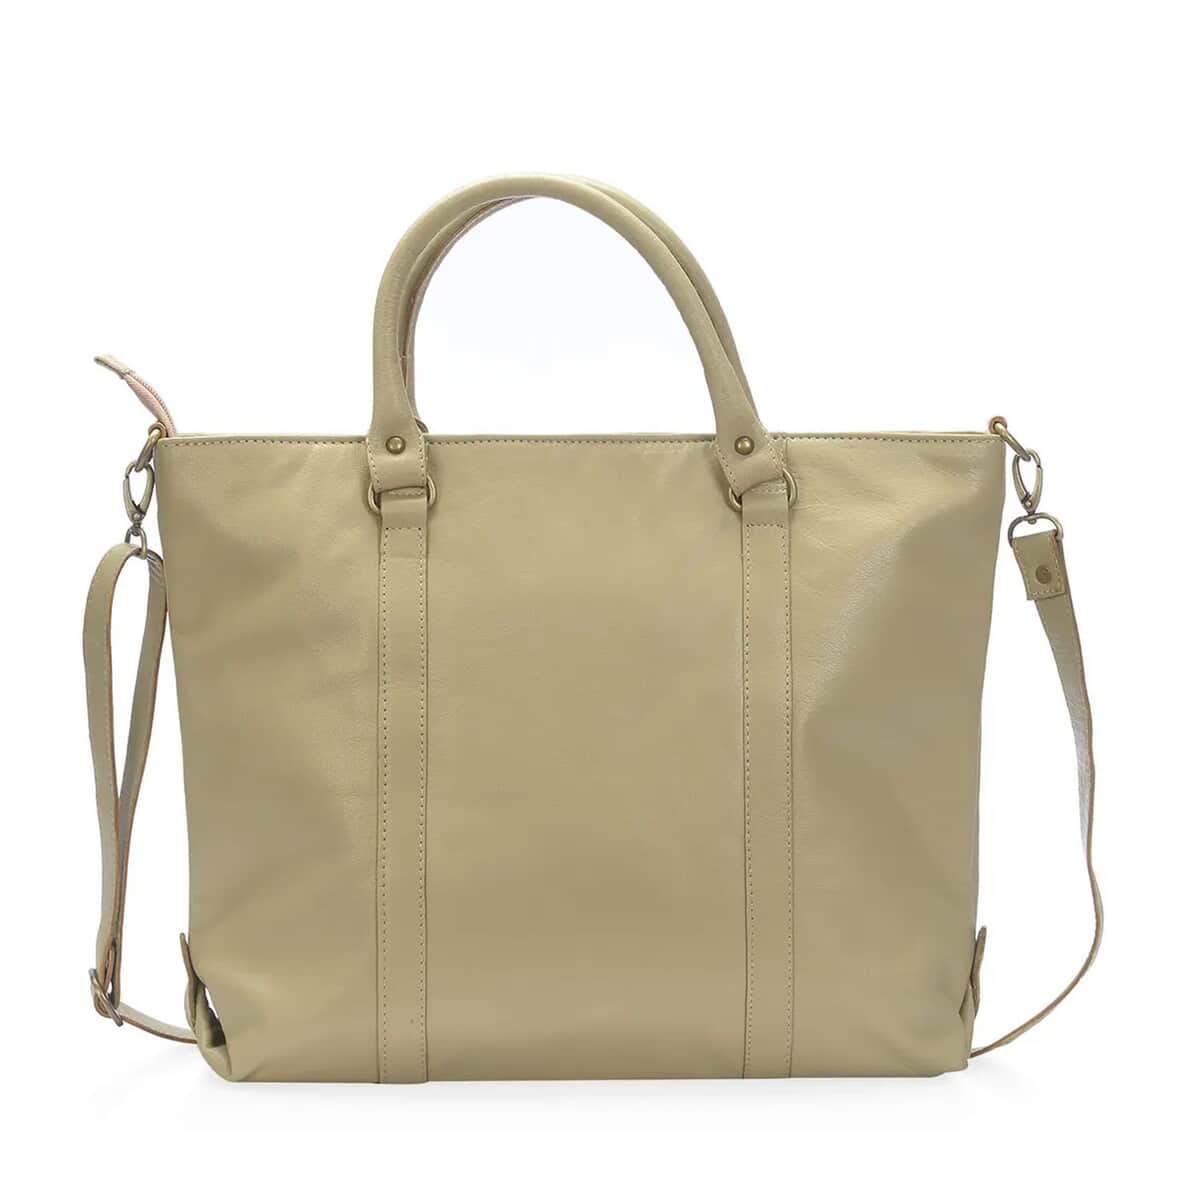 Sand Leather Handbag with Detachable Shoulder Strap image number 5